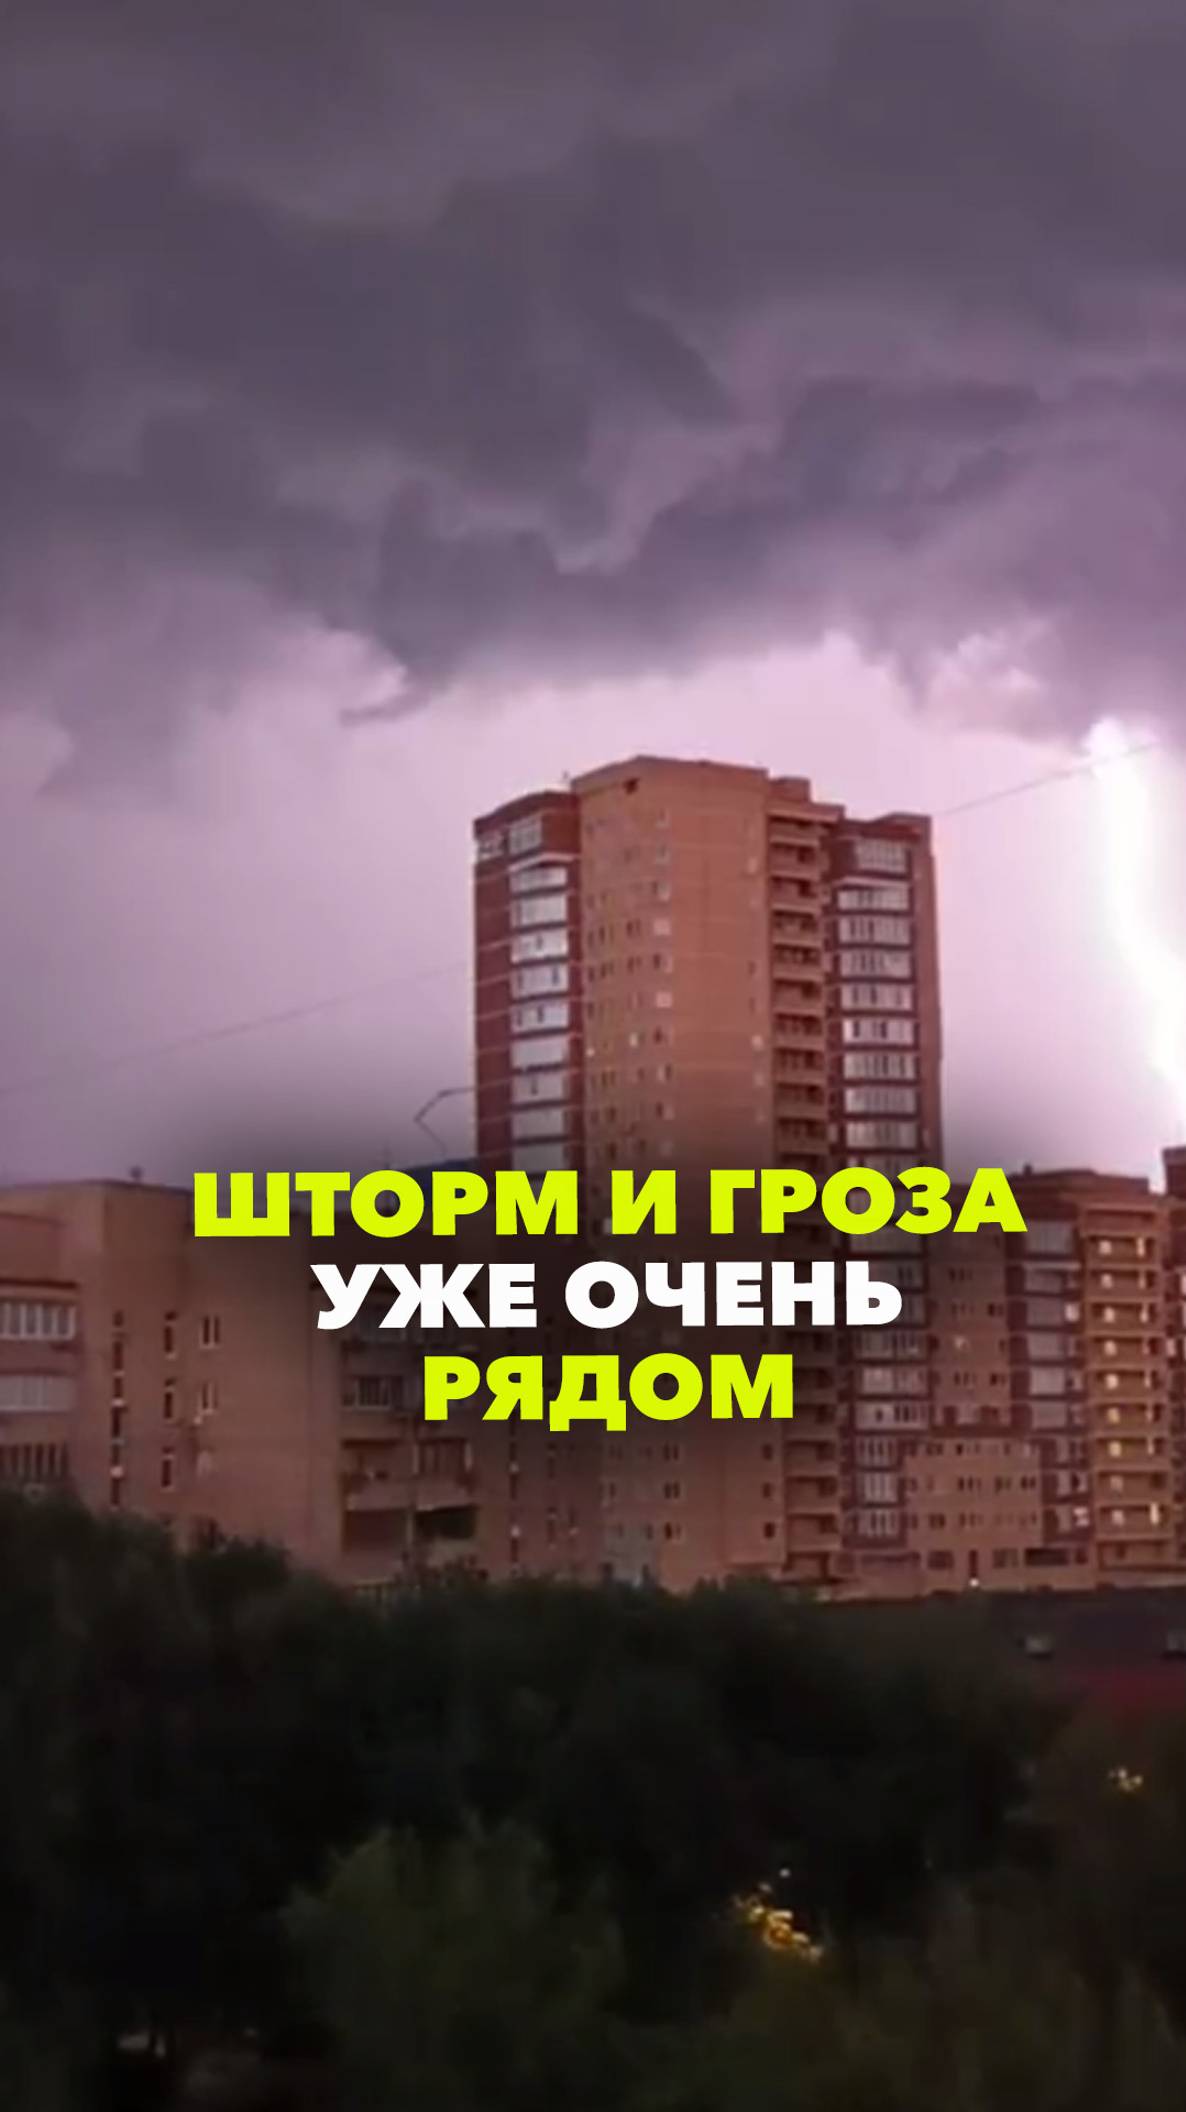 Питерский ураган идет на Москву: гроза уже рядом! Берите с собой зонты